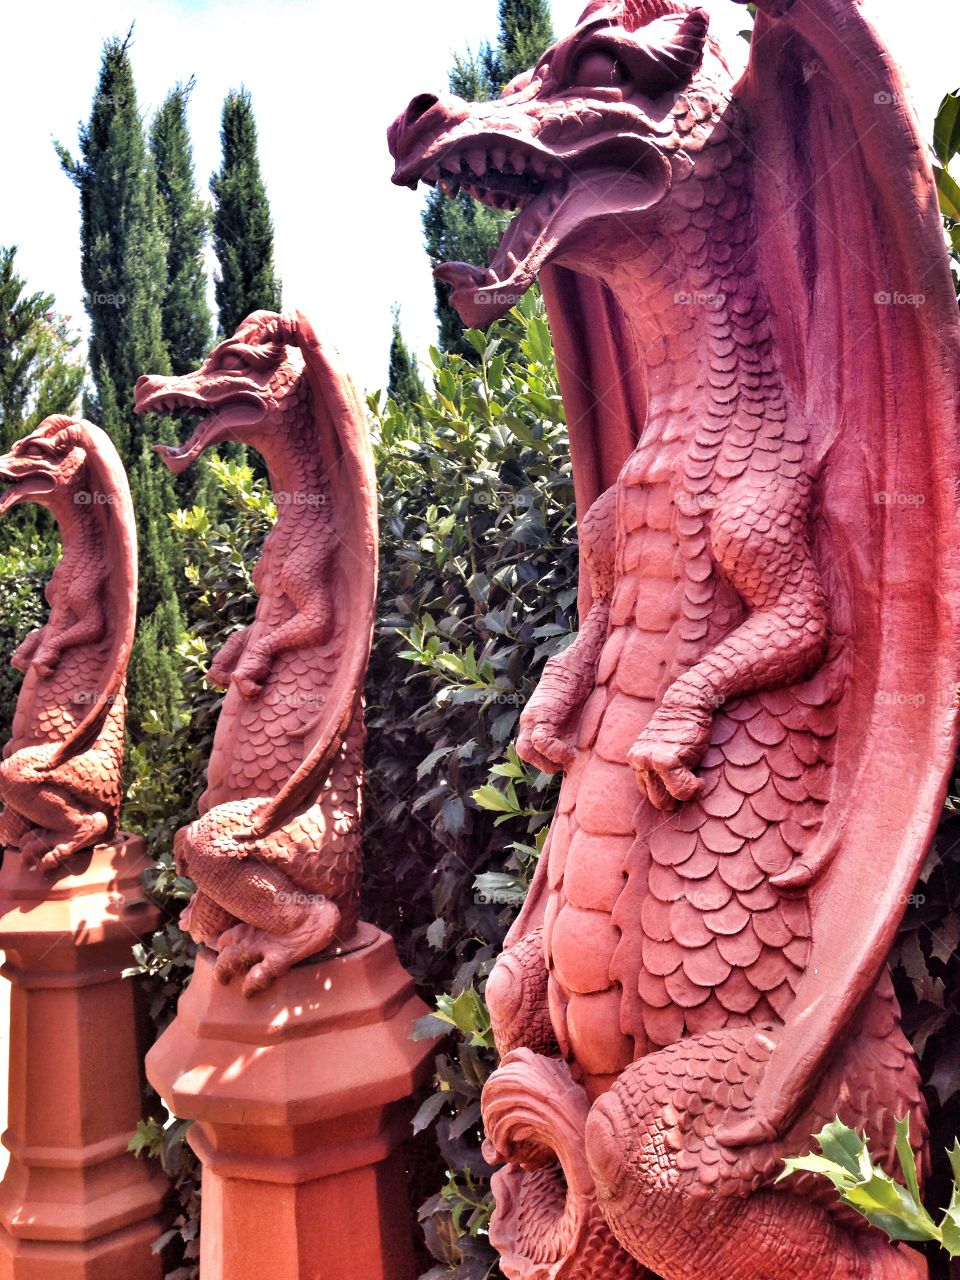 Guards of the maze. Stone Dragon sculptures in a garden maze